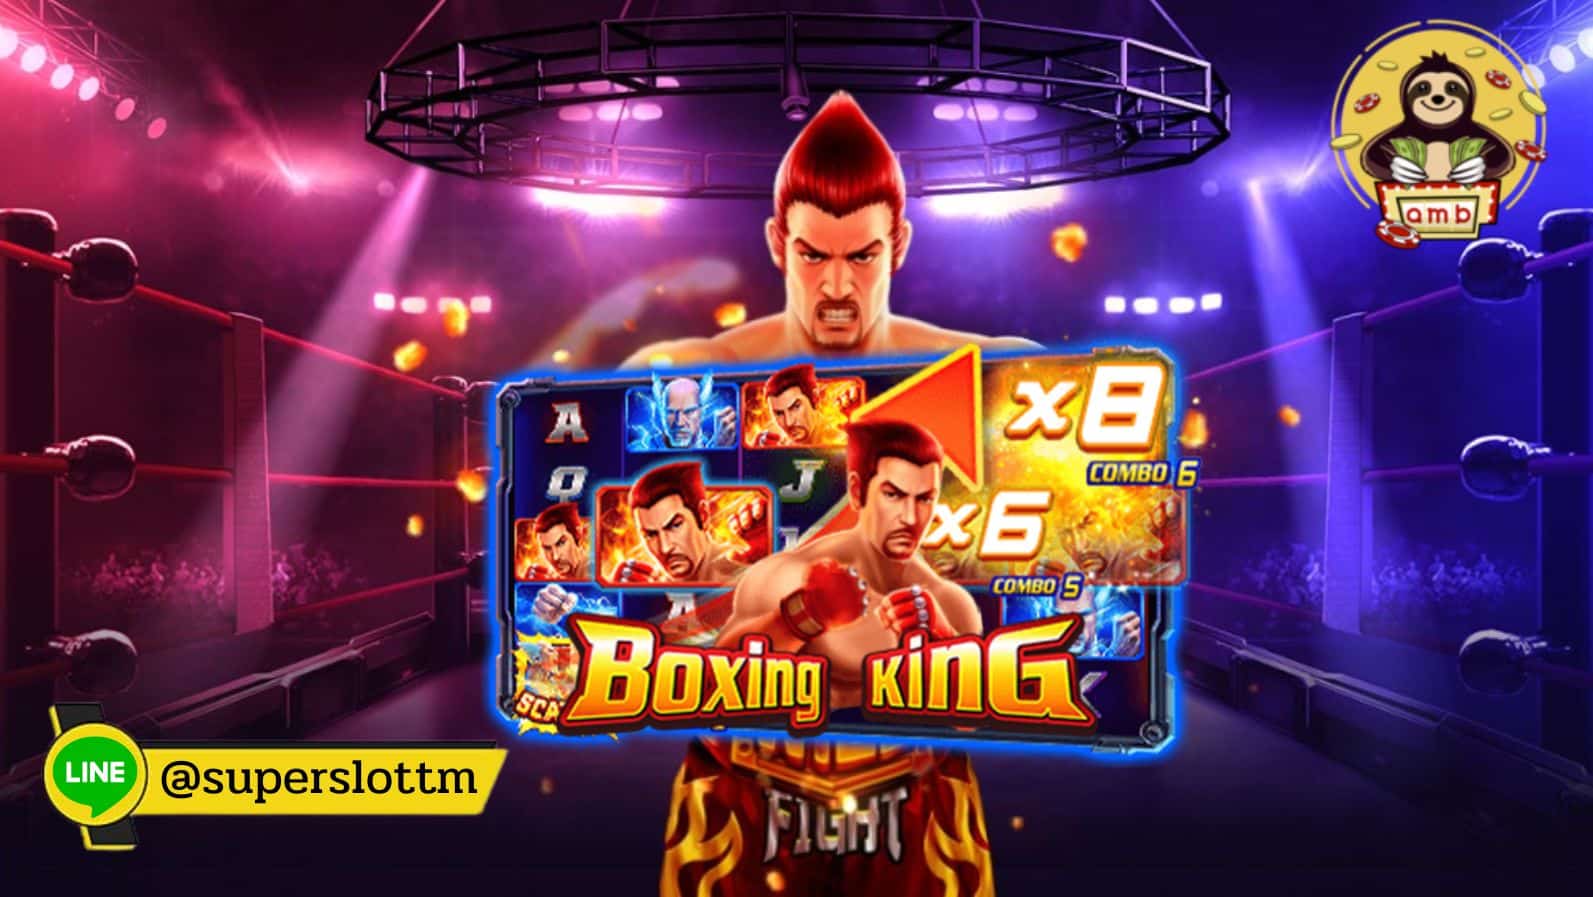 Boxing king